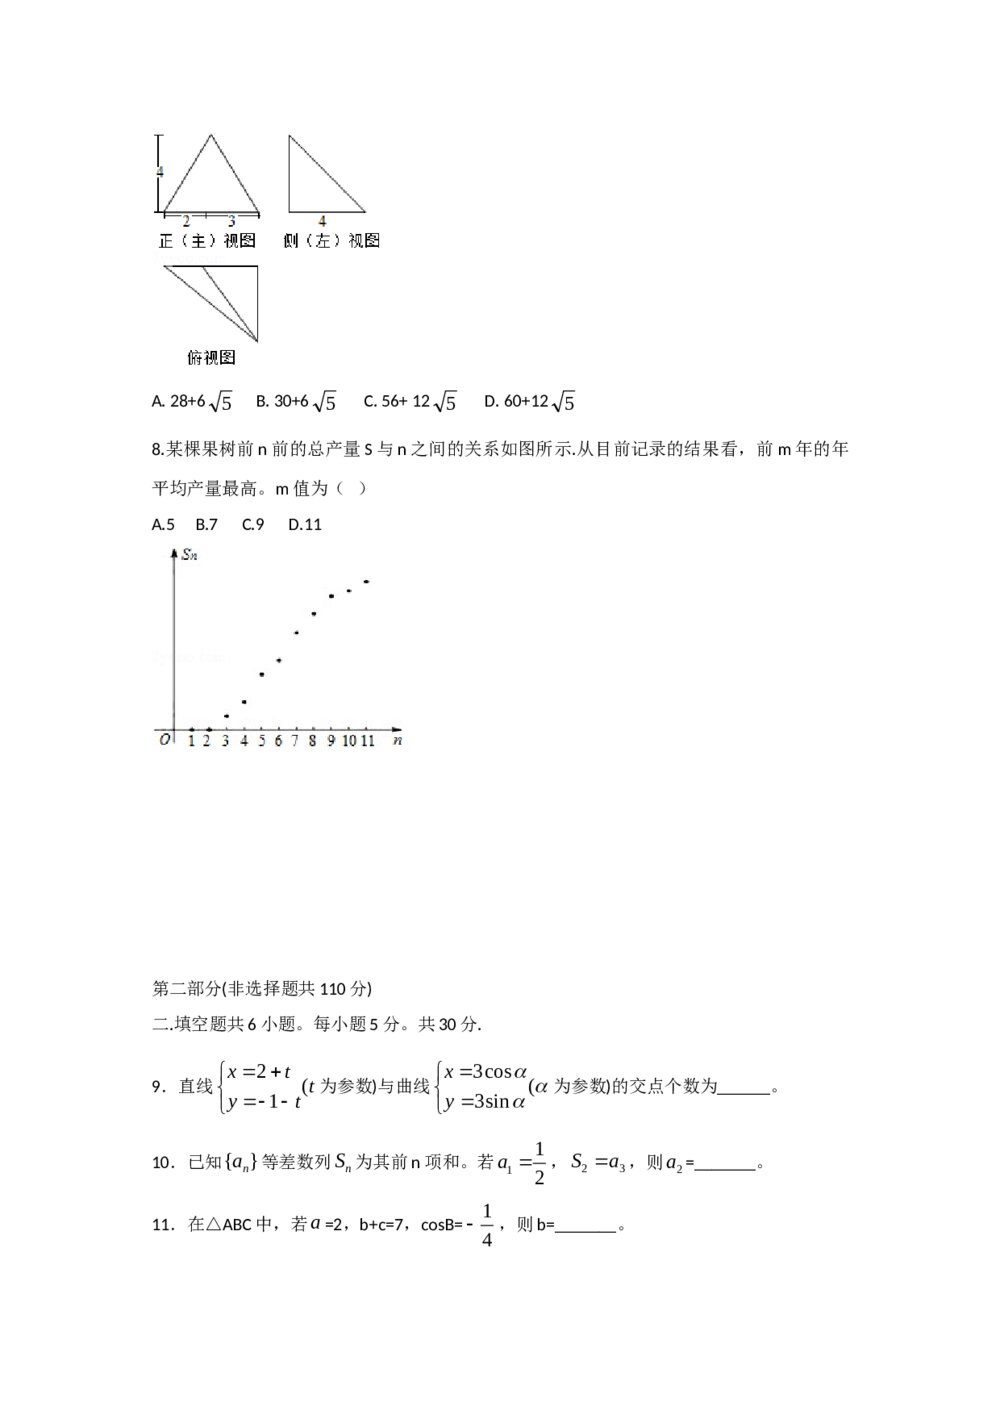 2012年北京高考(理科)数学试卷+参考答案解析3